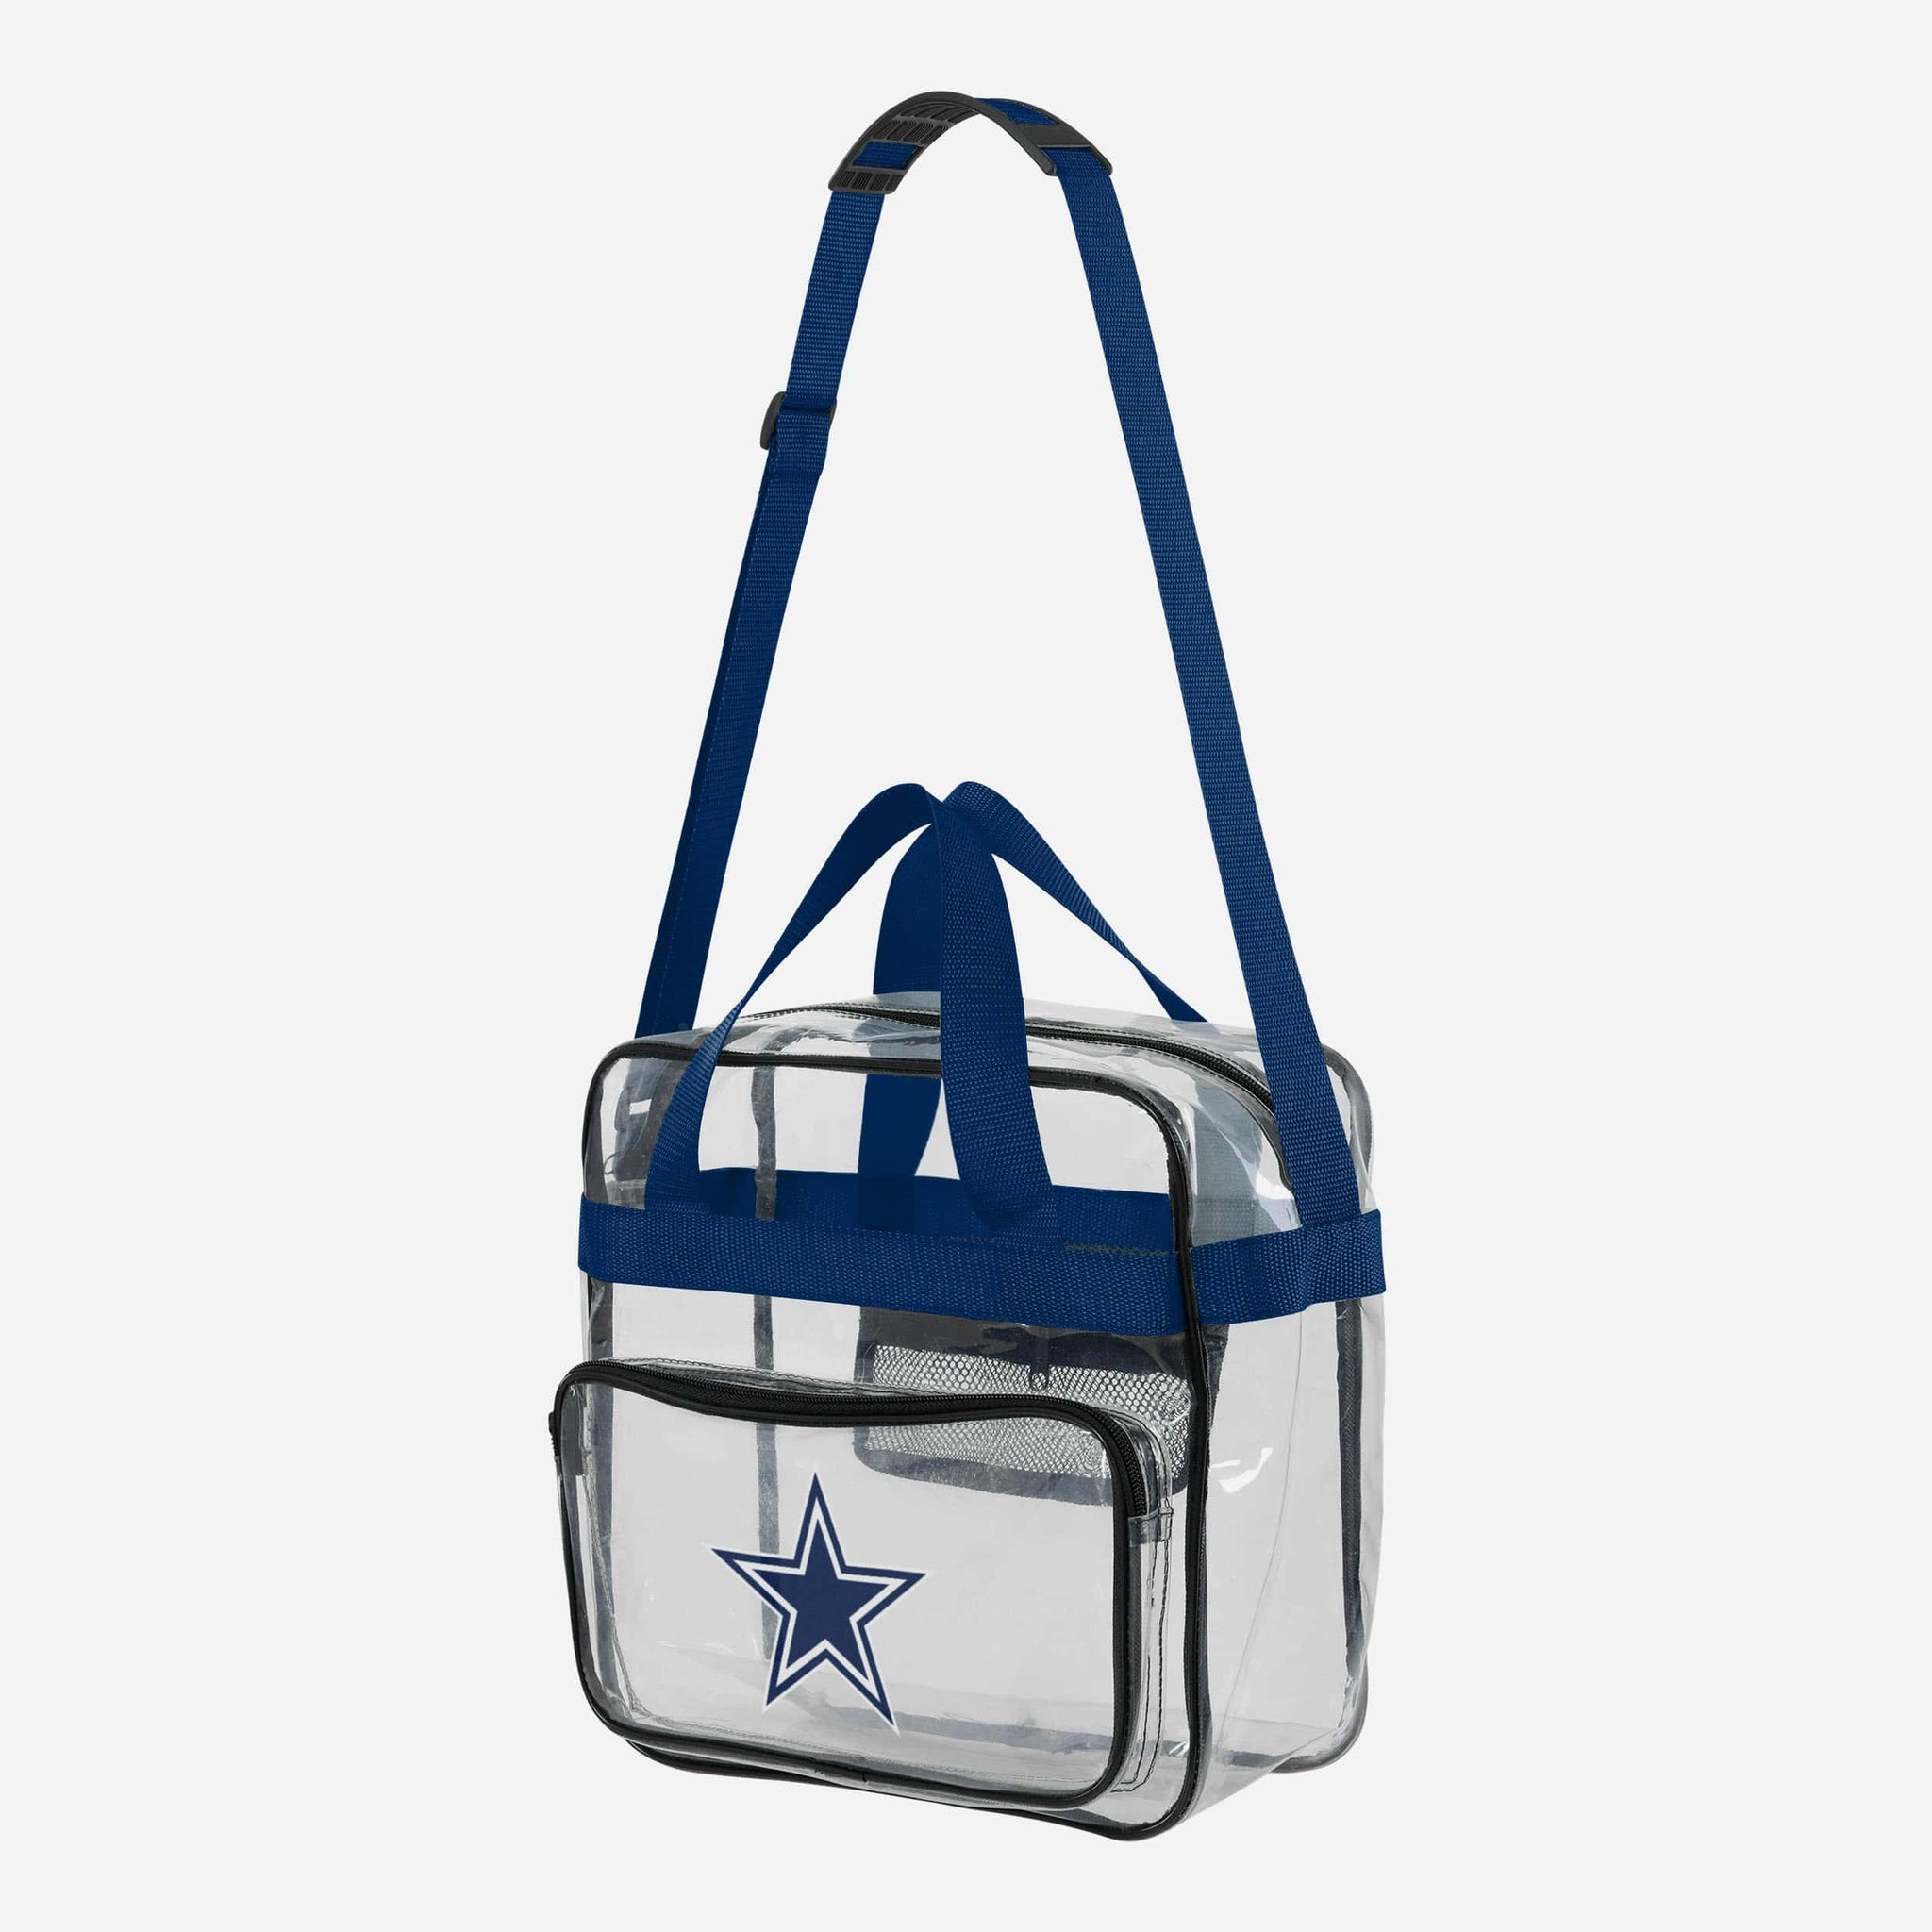 AF clear Stadium Messenger Bag, Mini or Regular